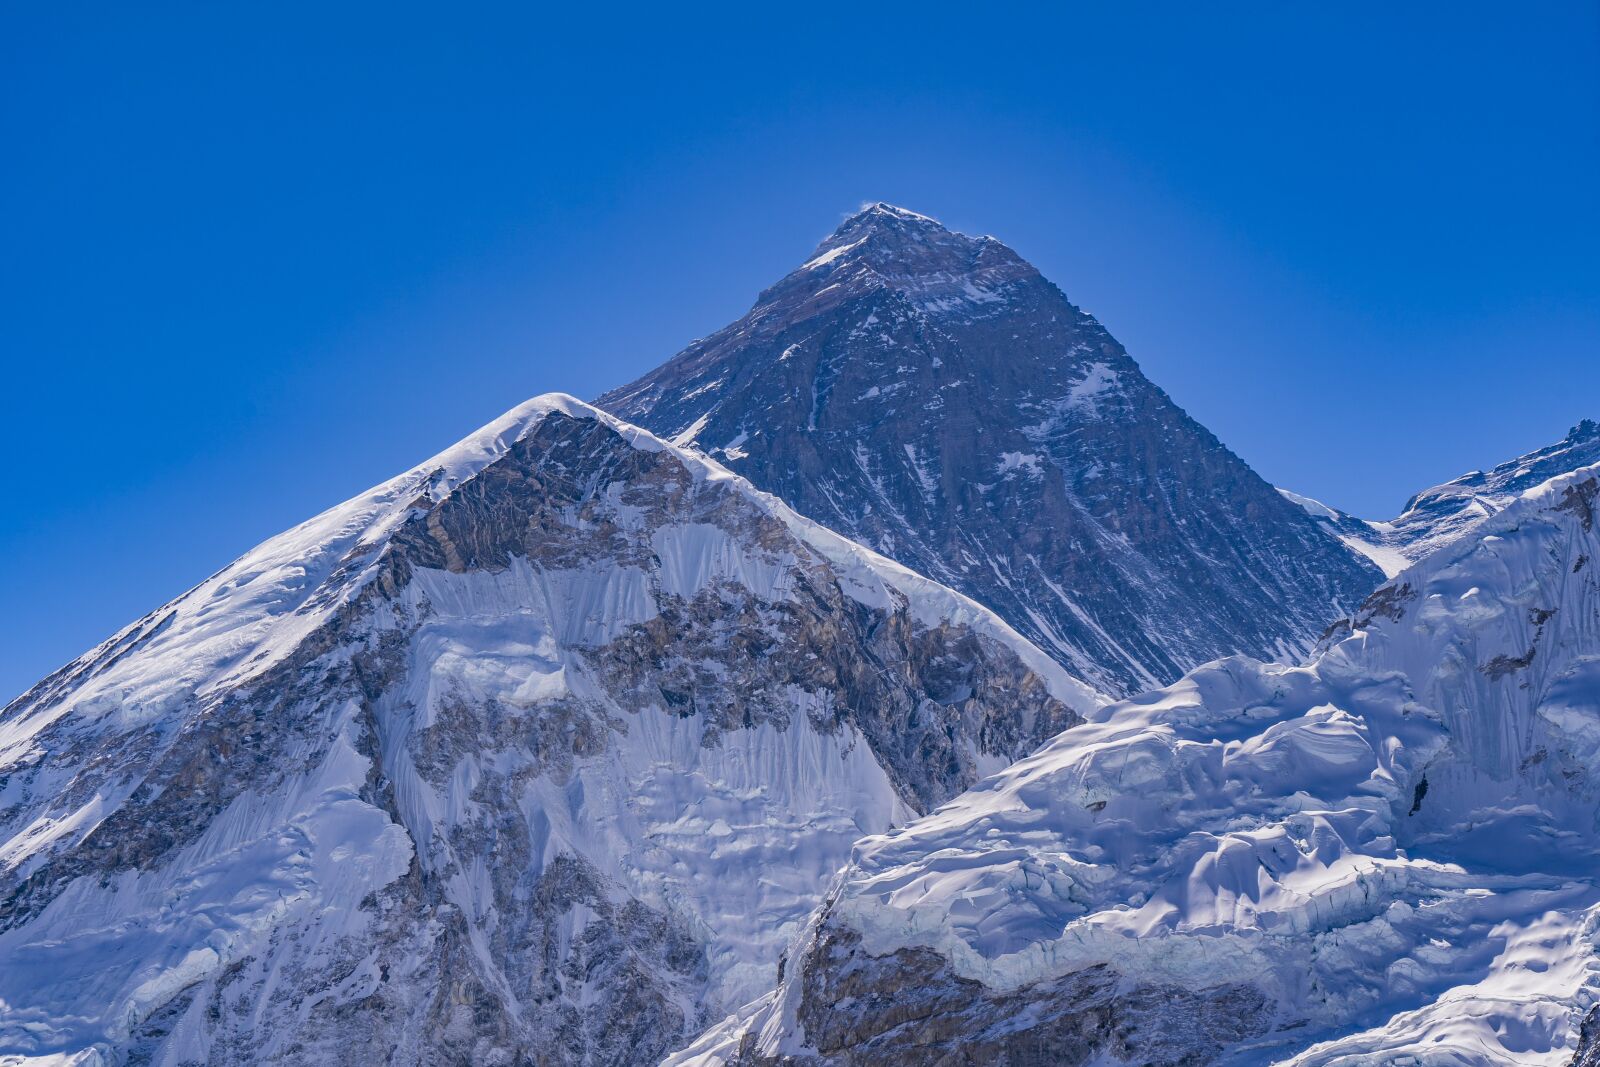 Sony a7 III + Sony Vario Tessar T* FE 24-70mm F4 ZA OSS sample photo. Mountain, nepal, himalayan photography